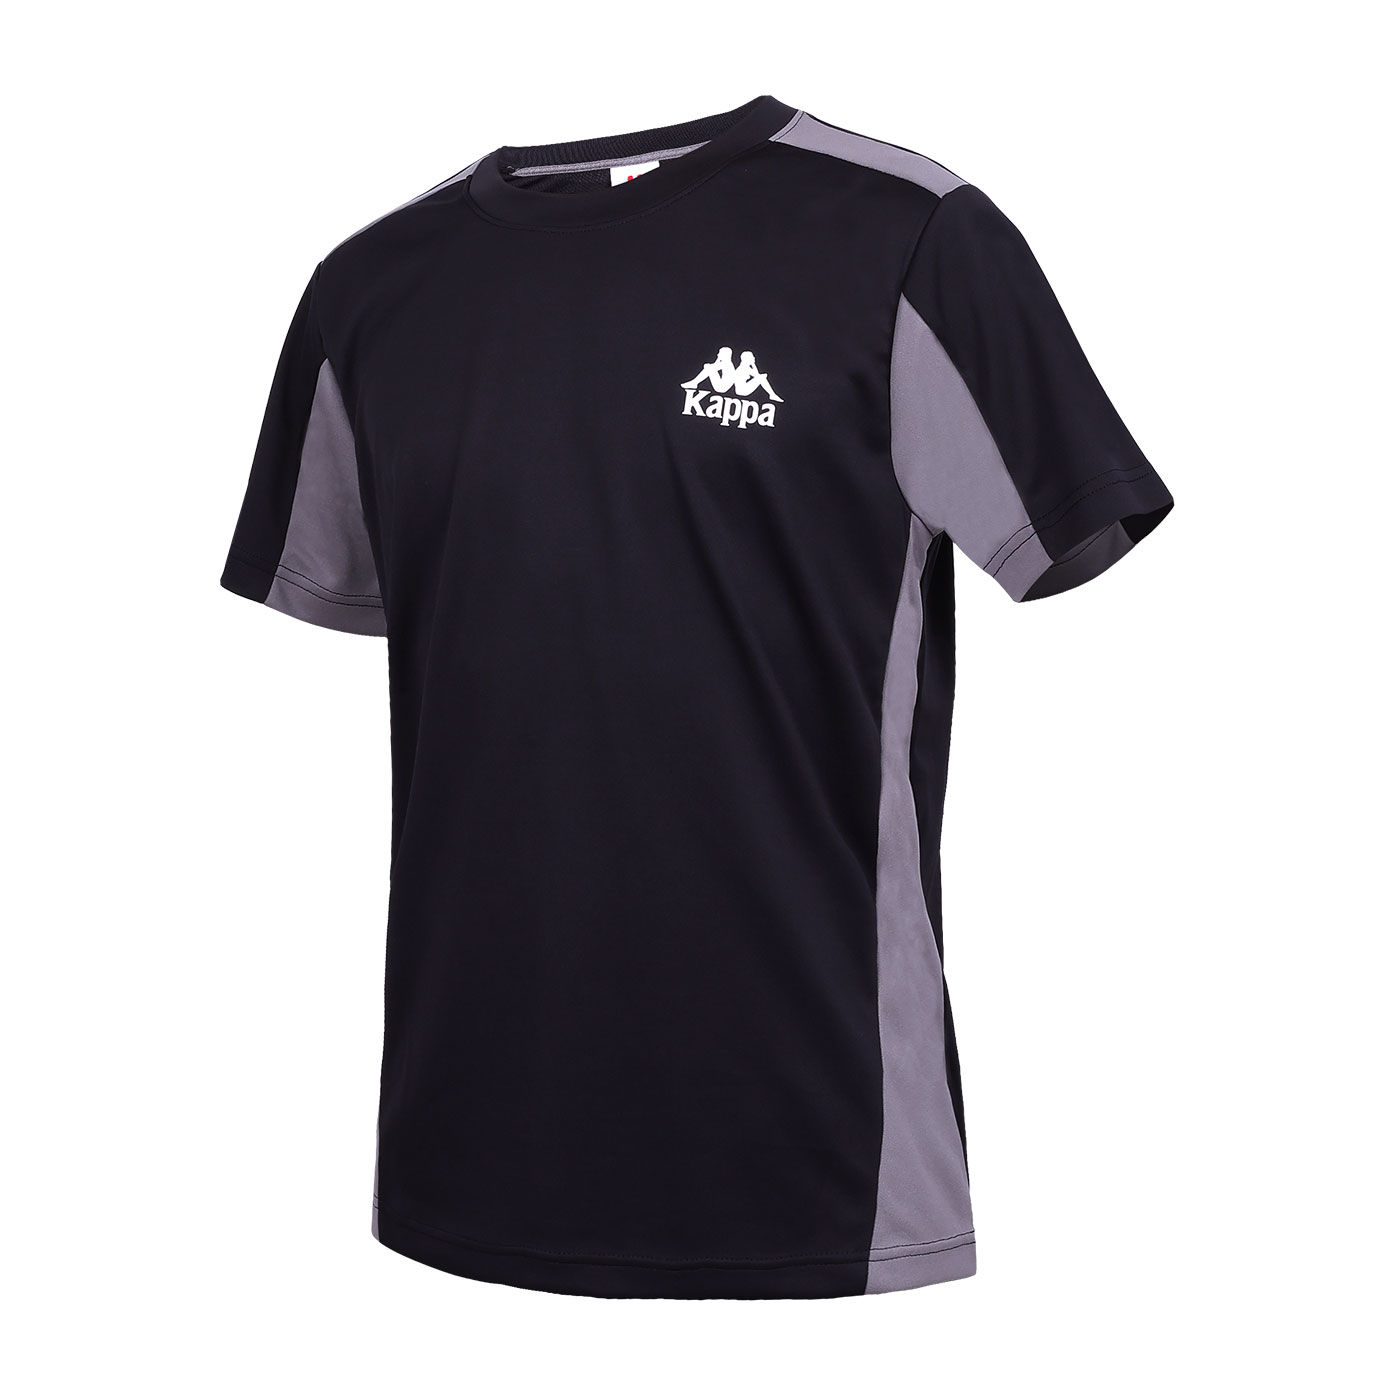 KAPPA 運動短袖T恤  361R25W-005 - 黑灰白